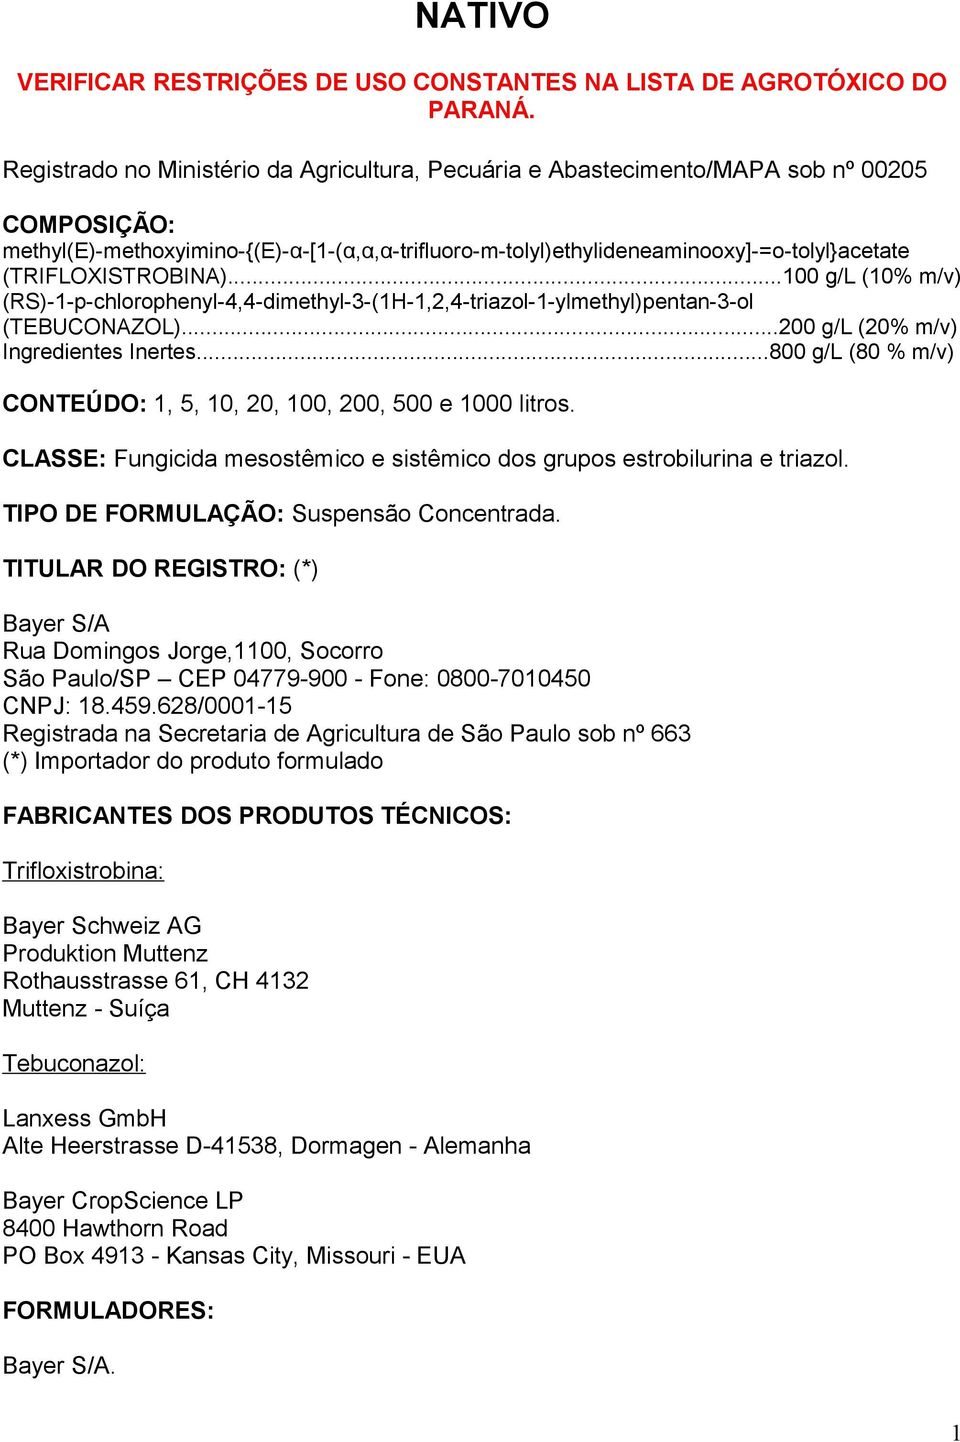 ..100 g/l (10% m/v) (RS)1pchlorophenyl4,4dimethyl3(1H1,2,4triazol1ylmethyl)pentan3ol (TEBUCONAZOL)...200 g/l (20% m/v) Ingredientes Inertes.